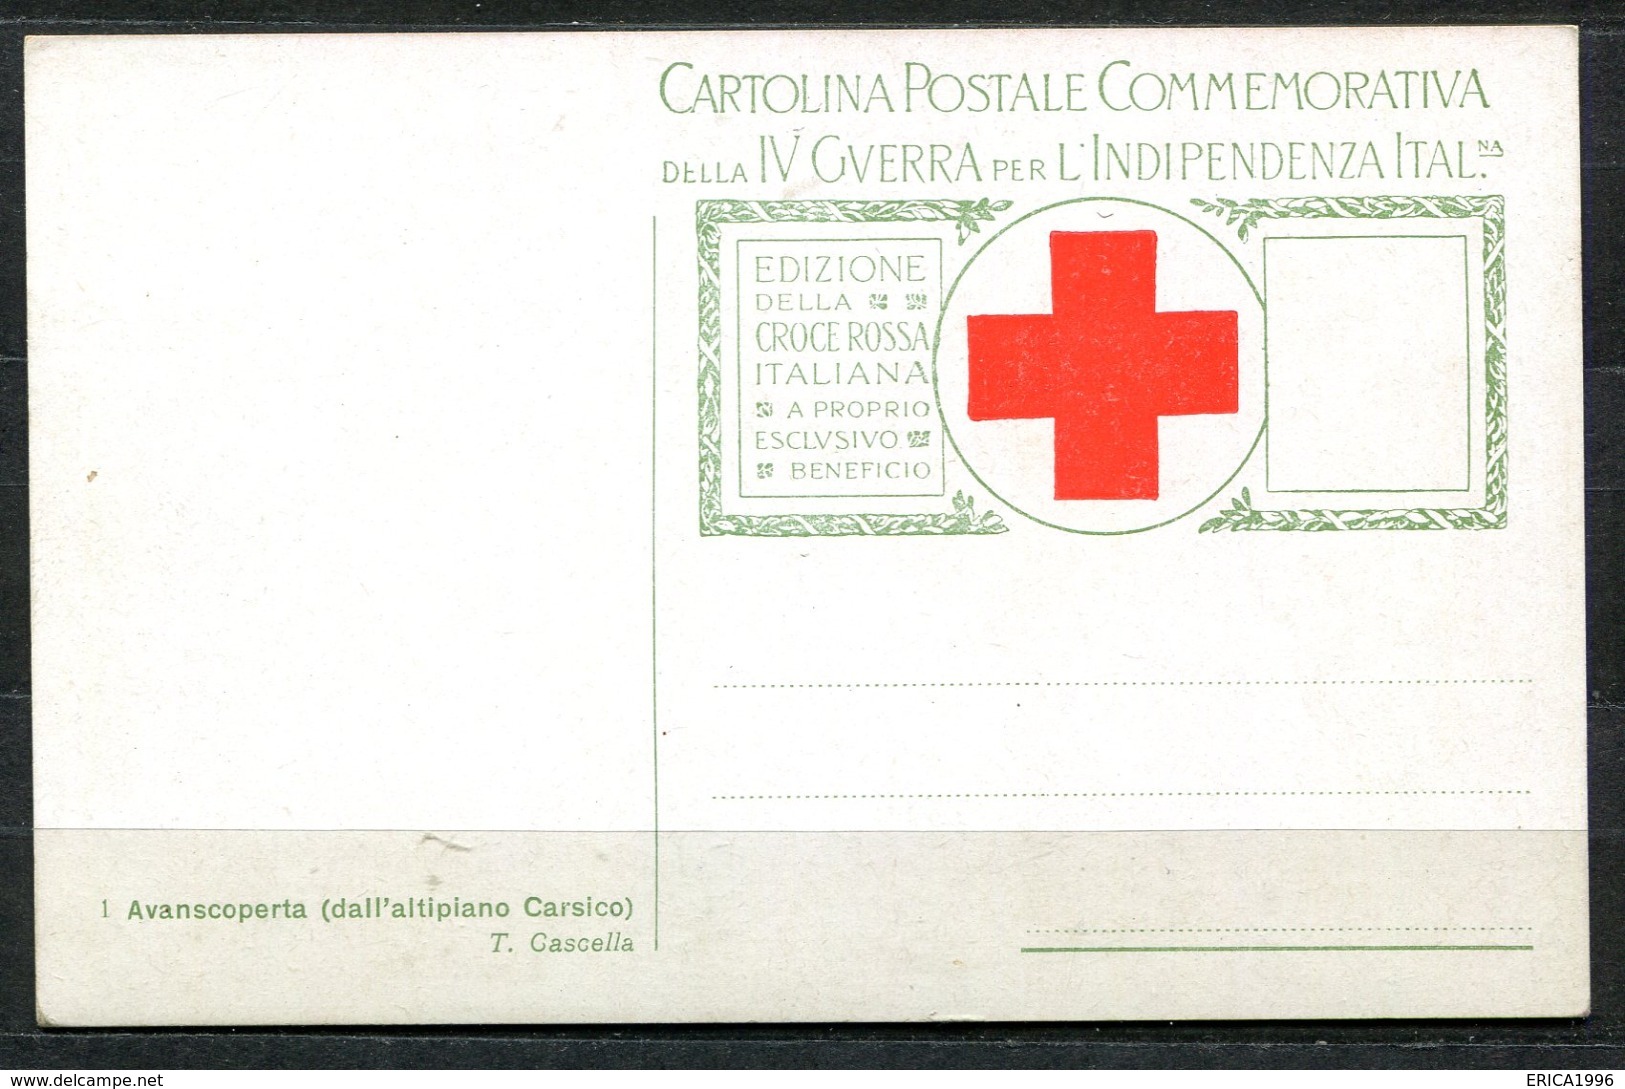 CV3004 MILITARI CROCE ROSSA Avanscoperta (dall'altipiano Carsico), Ill. T. Cascella, FP, Non Viaggiata, Ottime Condizion - Croce Rossa